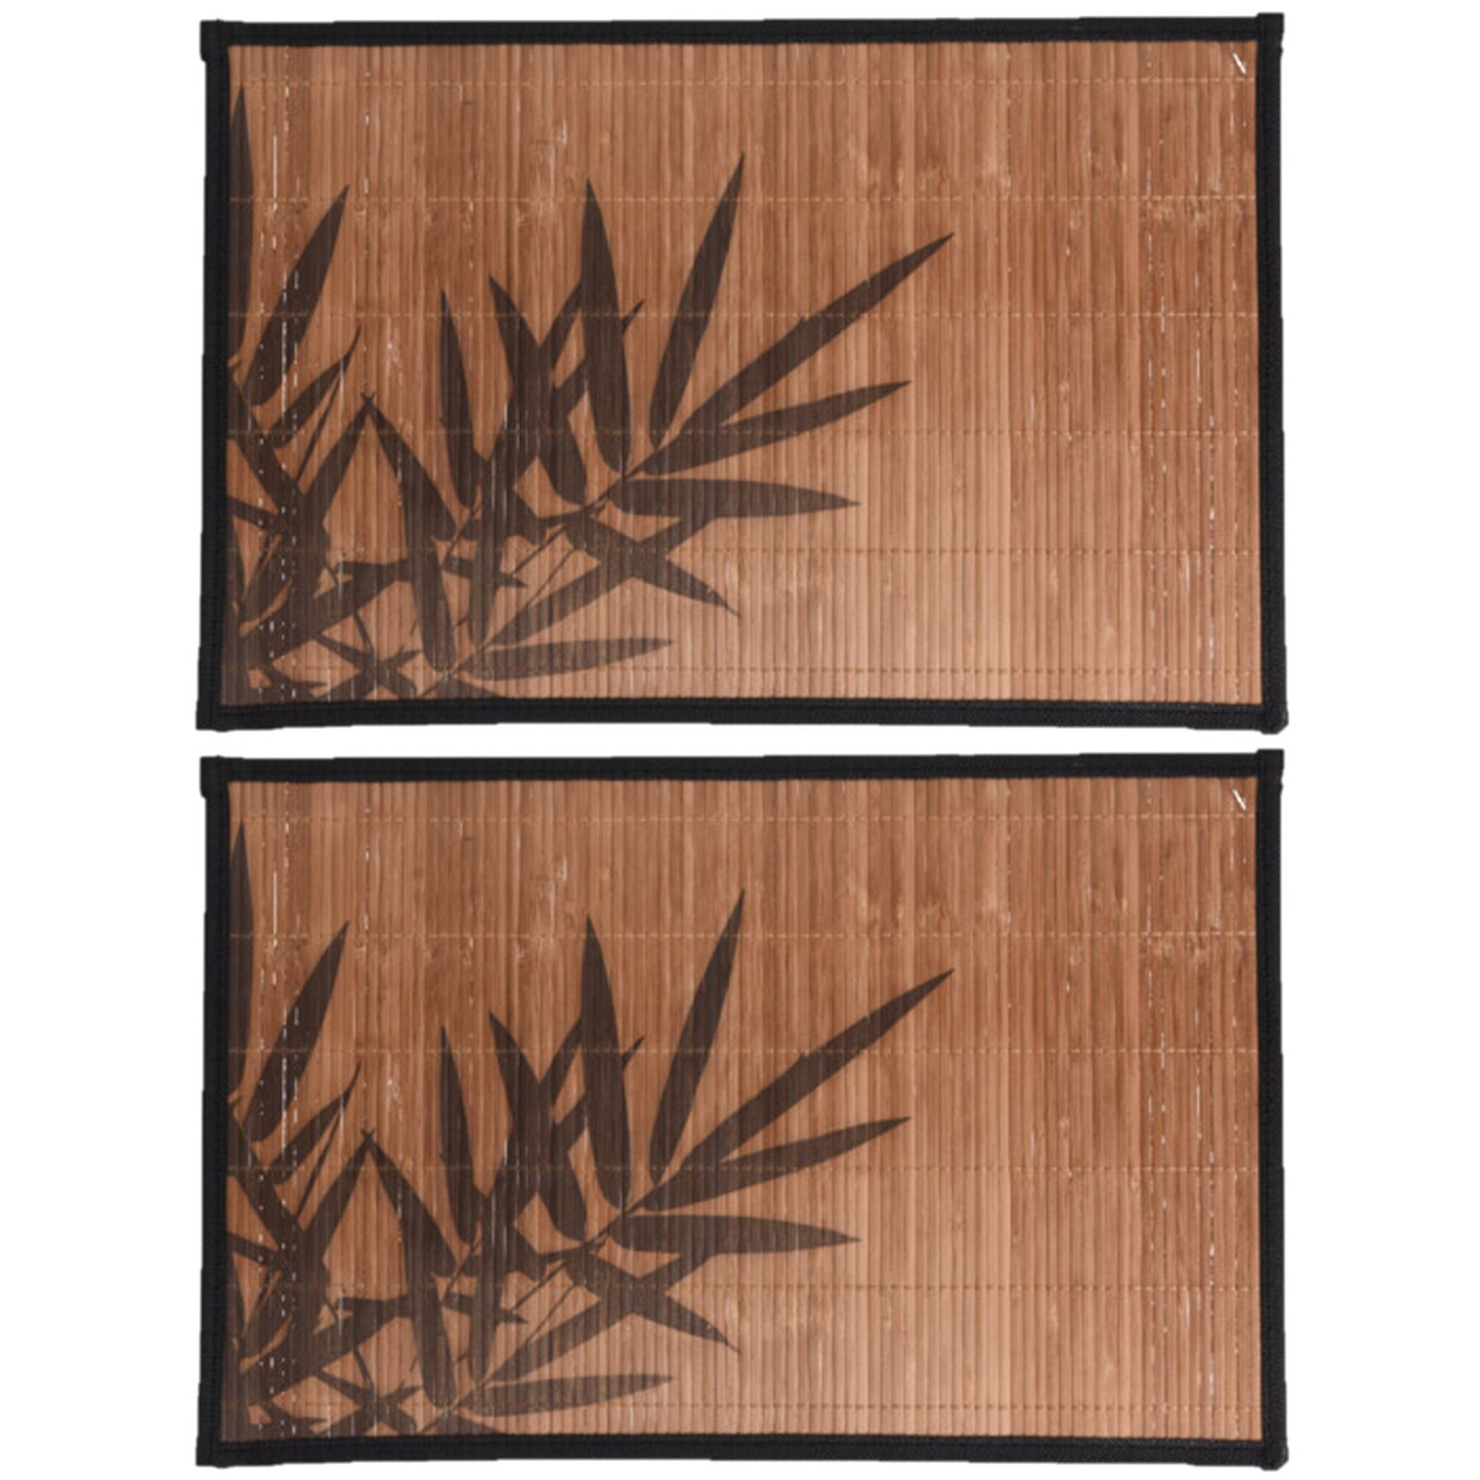 12x stuks rechthoekige placemat 30 x 45 cm bamboe bruin met zwarte bamboe print 2